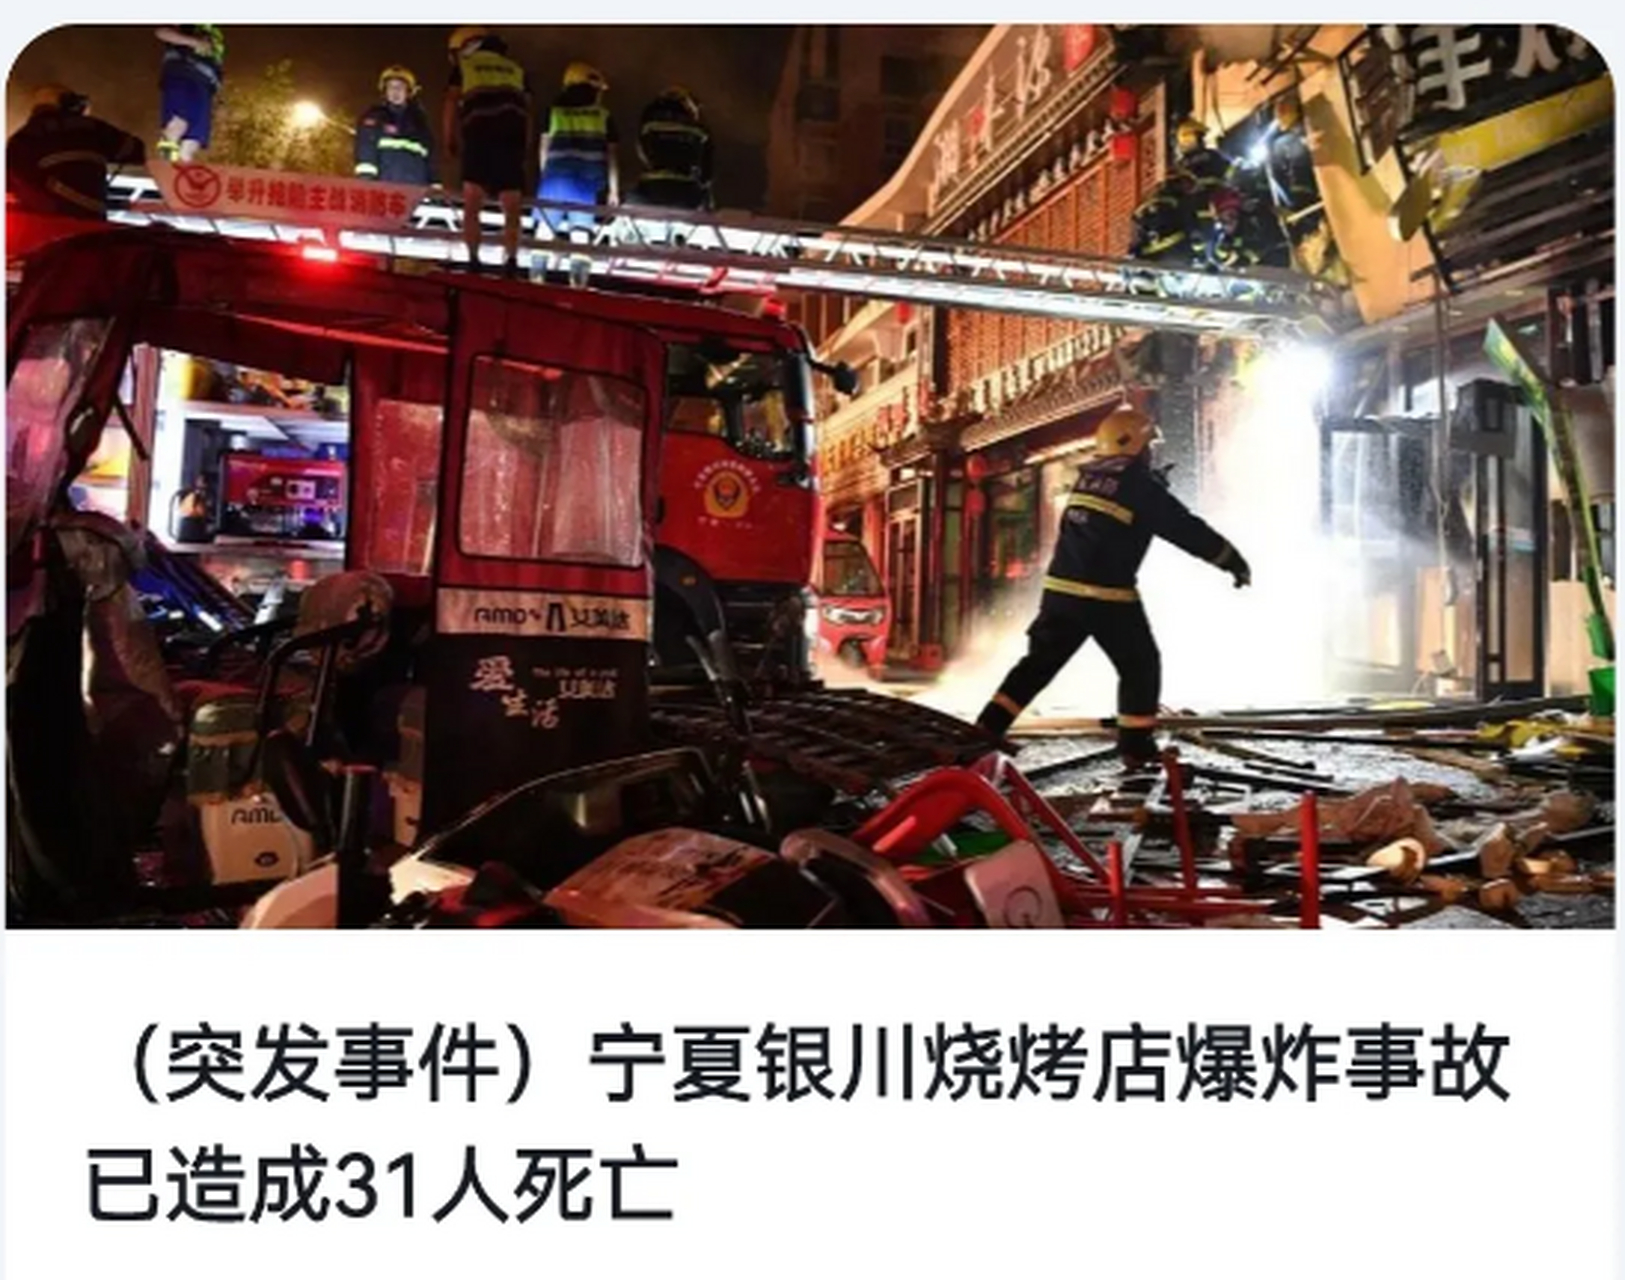 宁夏银川烧烤店爆炸致31死